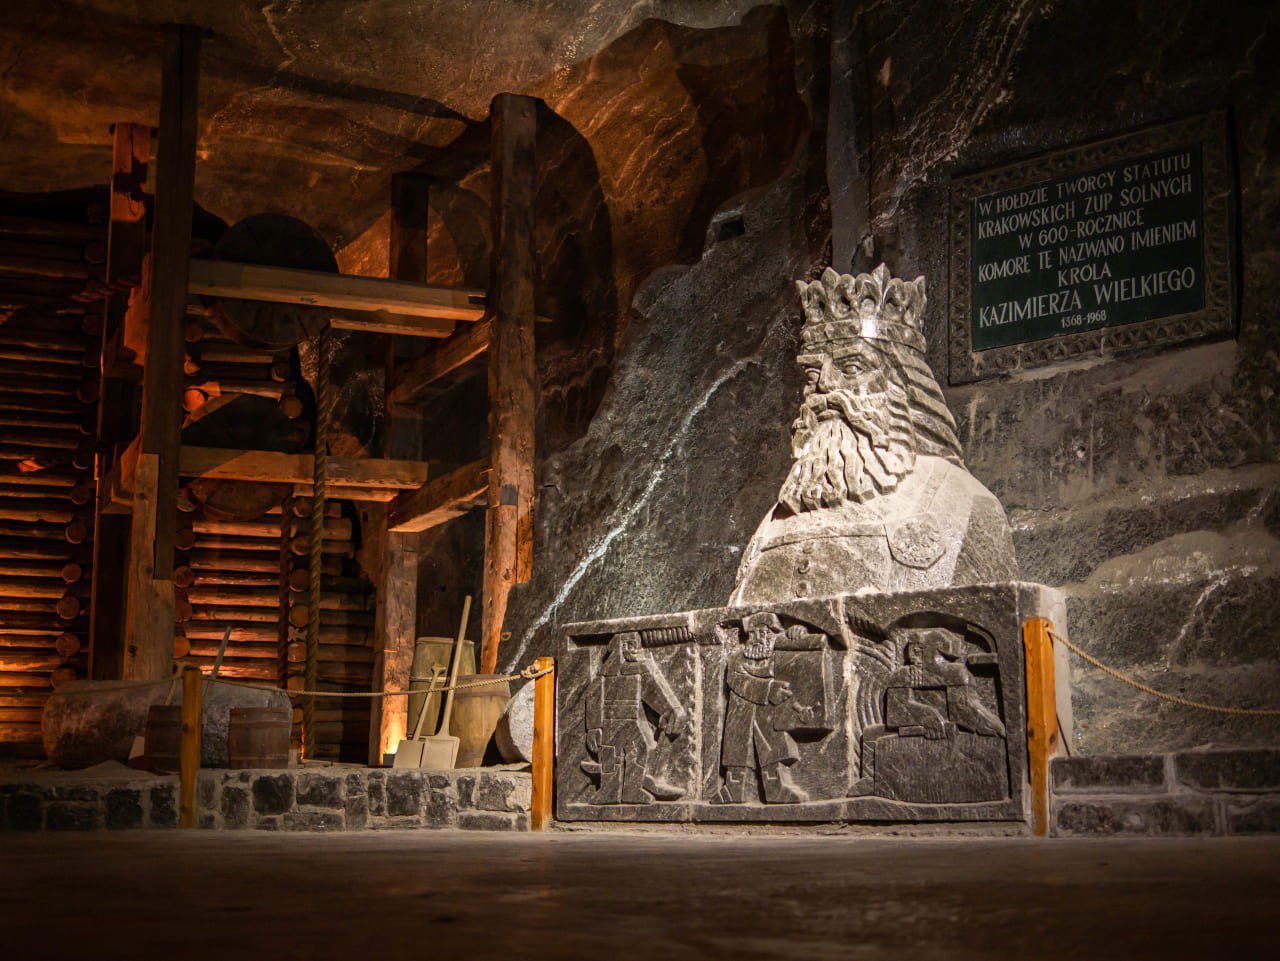 kopalnia soli wieliczka komora króla kazimierza wielkiego solna rzeźba